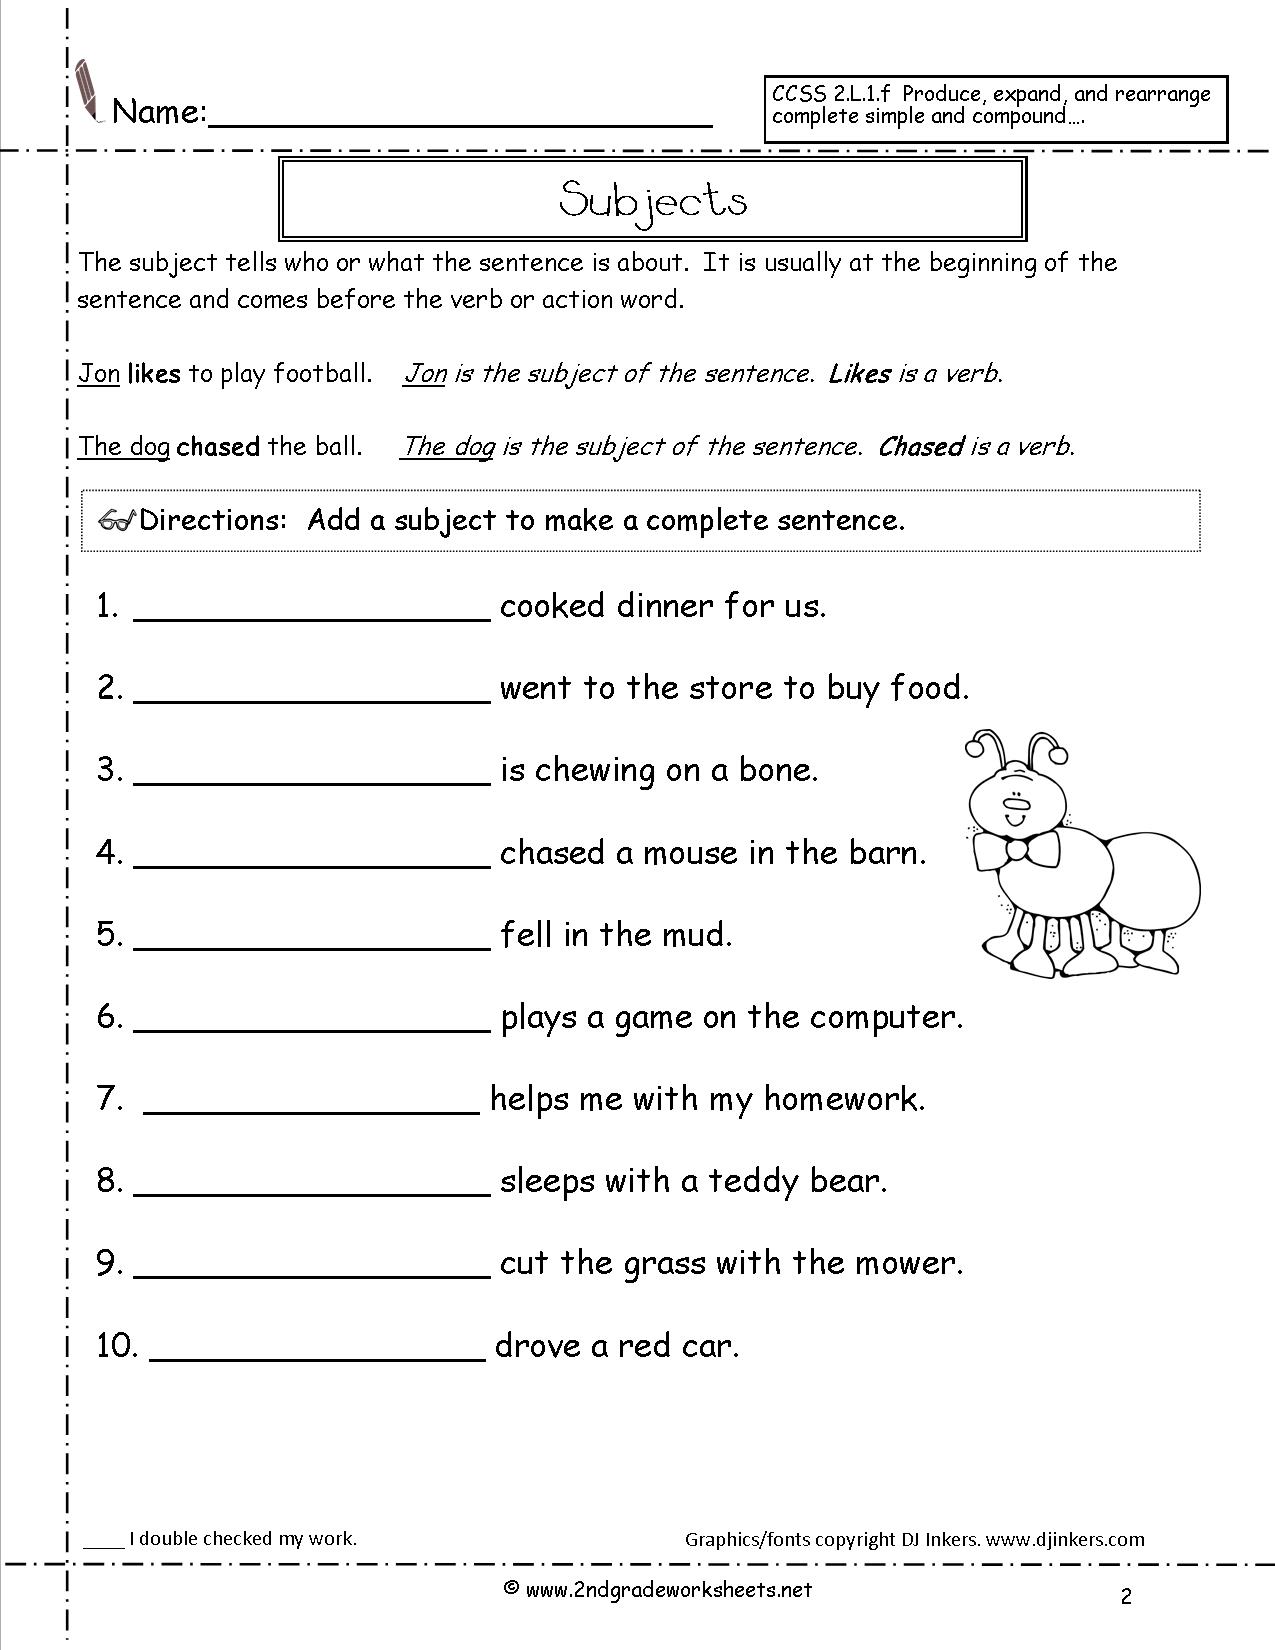 15-best-images-of-2nd-grade-sentences-worksheets-compound-sentences-worksheets-2nd-grade-2nd